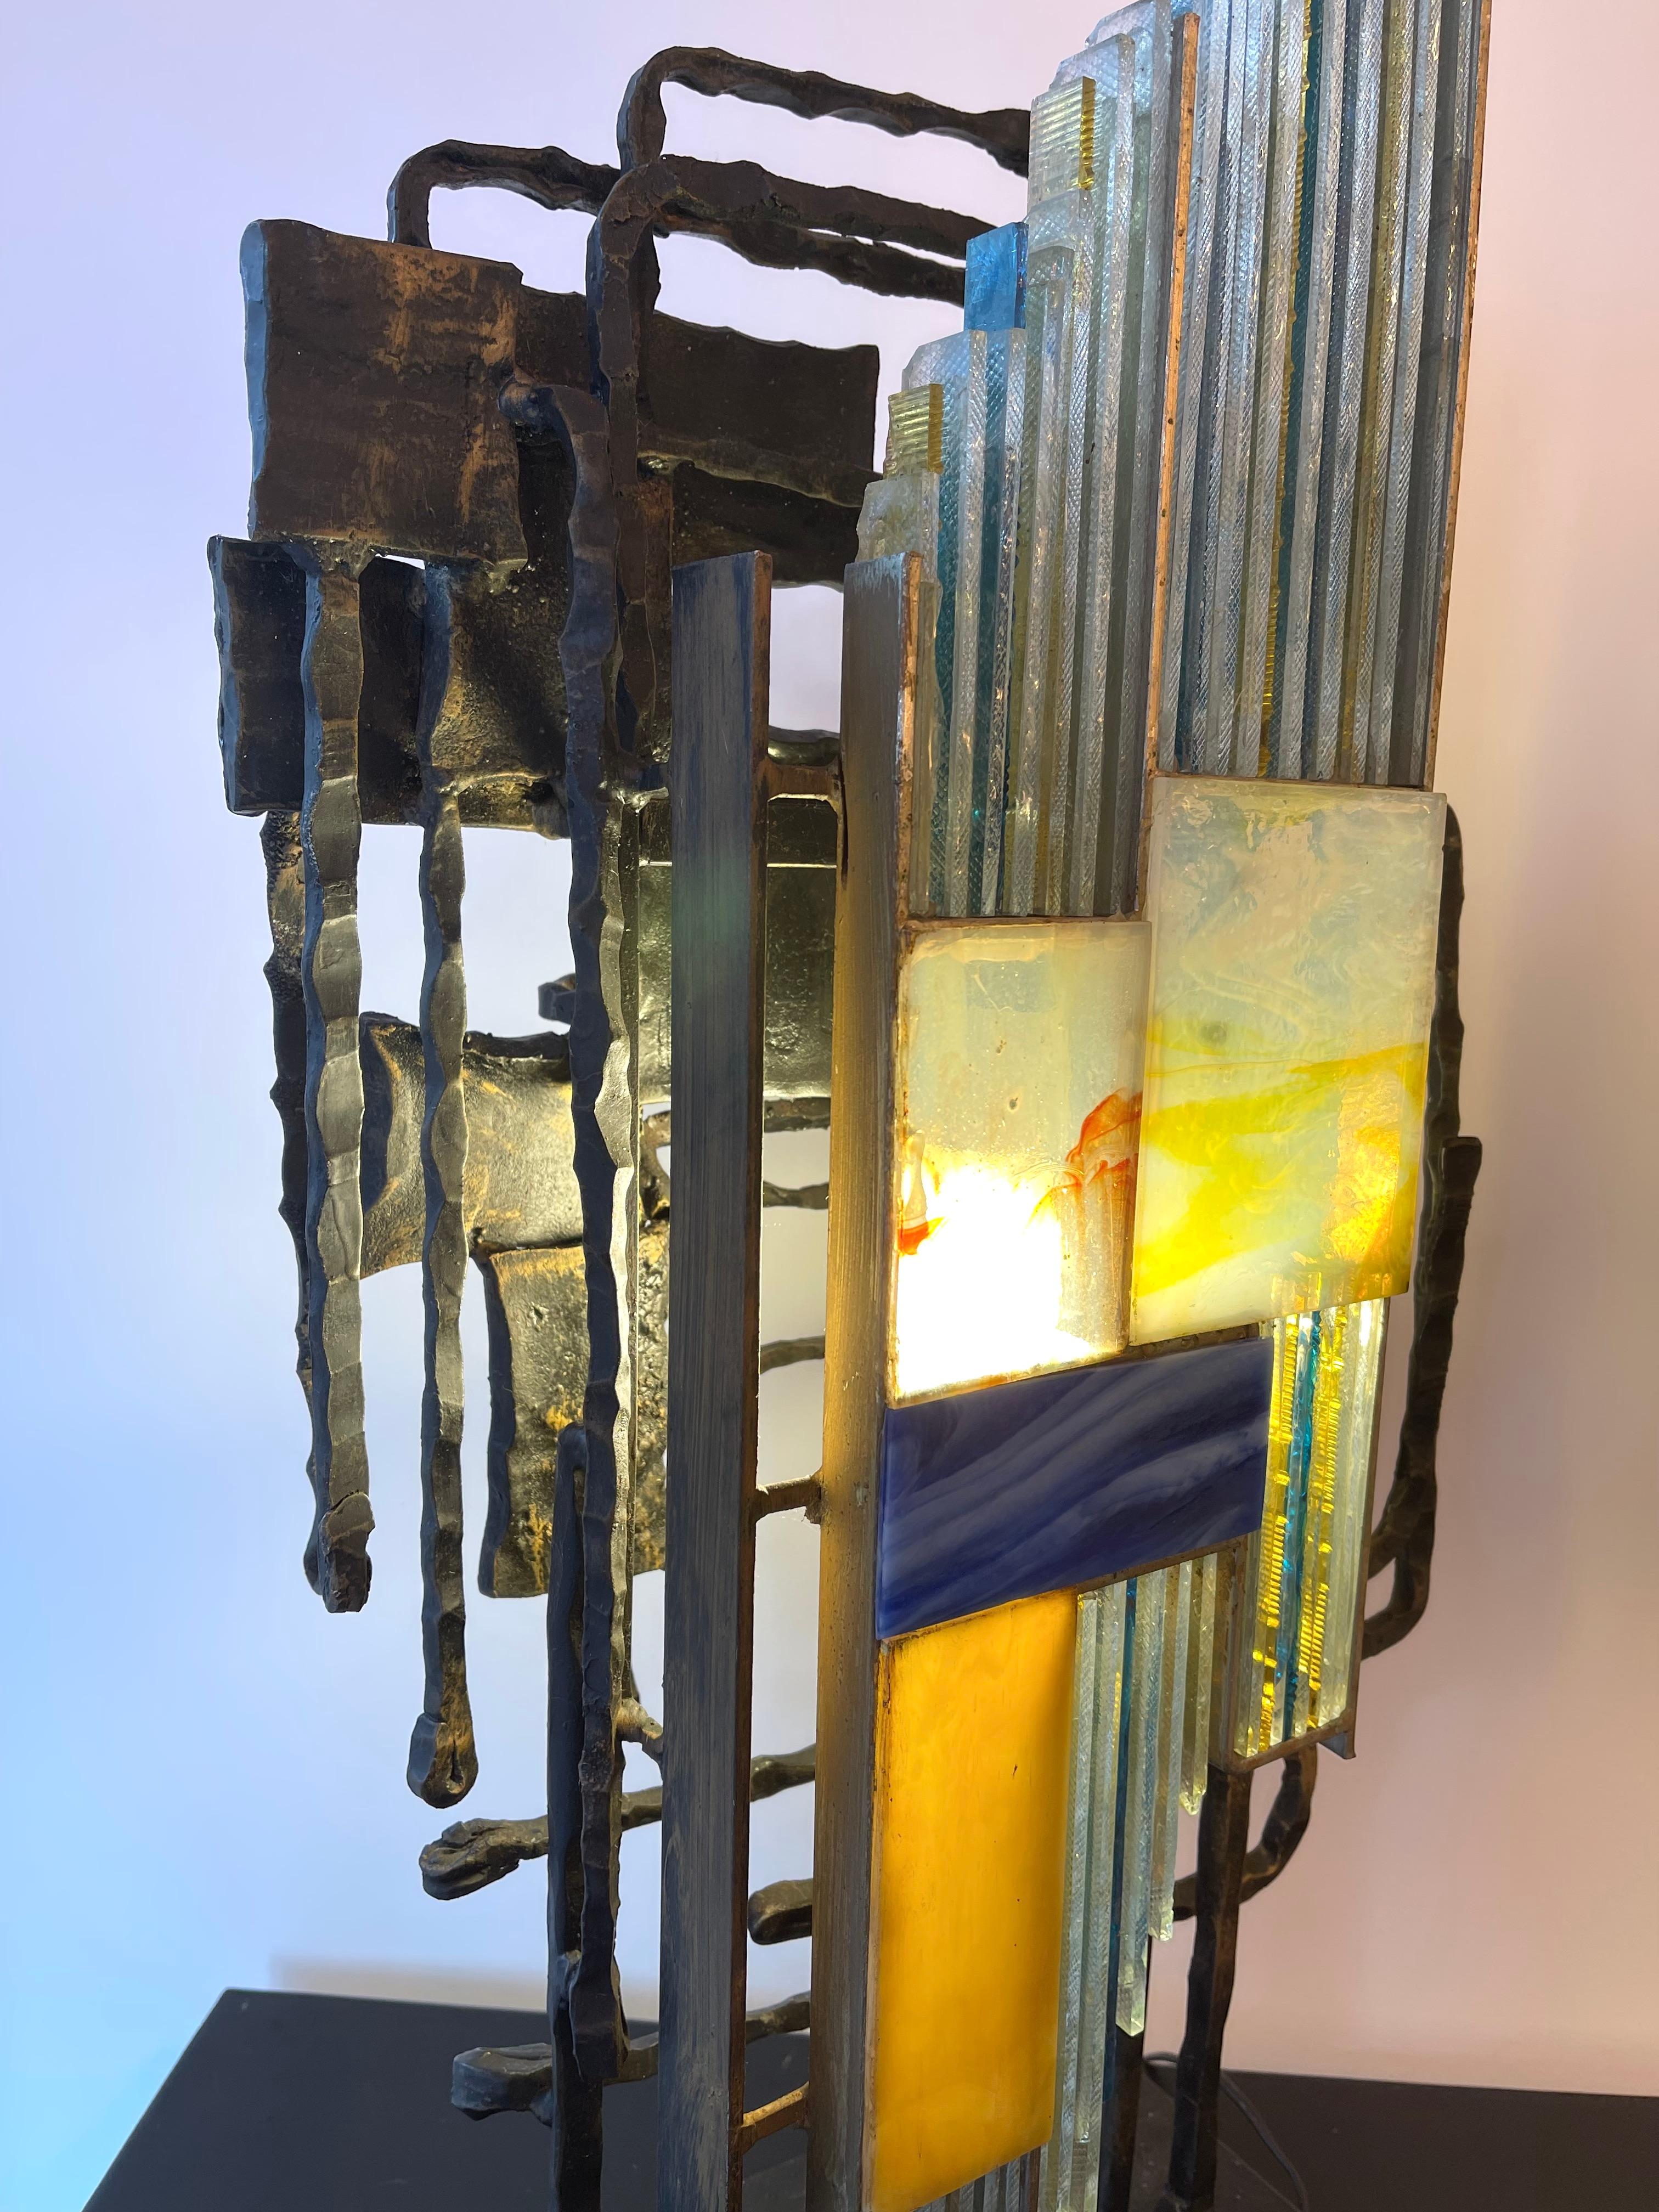 Mid-Century Modern Skulptur Lampe Licht Leuchte gehämmertes Glas und Schmiedeeisen, von der Manufaktur Biancardi & Jordan in Verona in einem brutalistischen Stil, der gleichzeitig von Longobard und Poliarte in den 1970er Jahren. Berühmtes Design wie